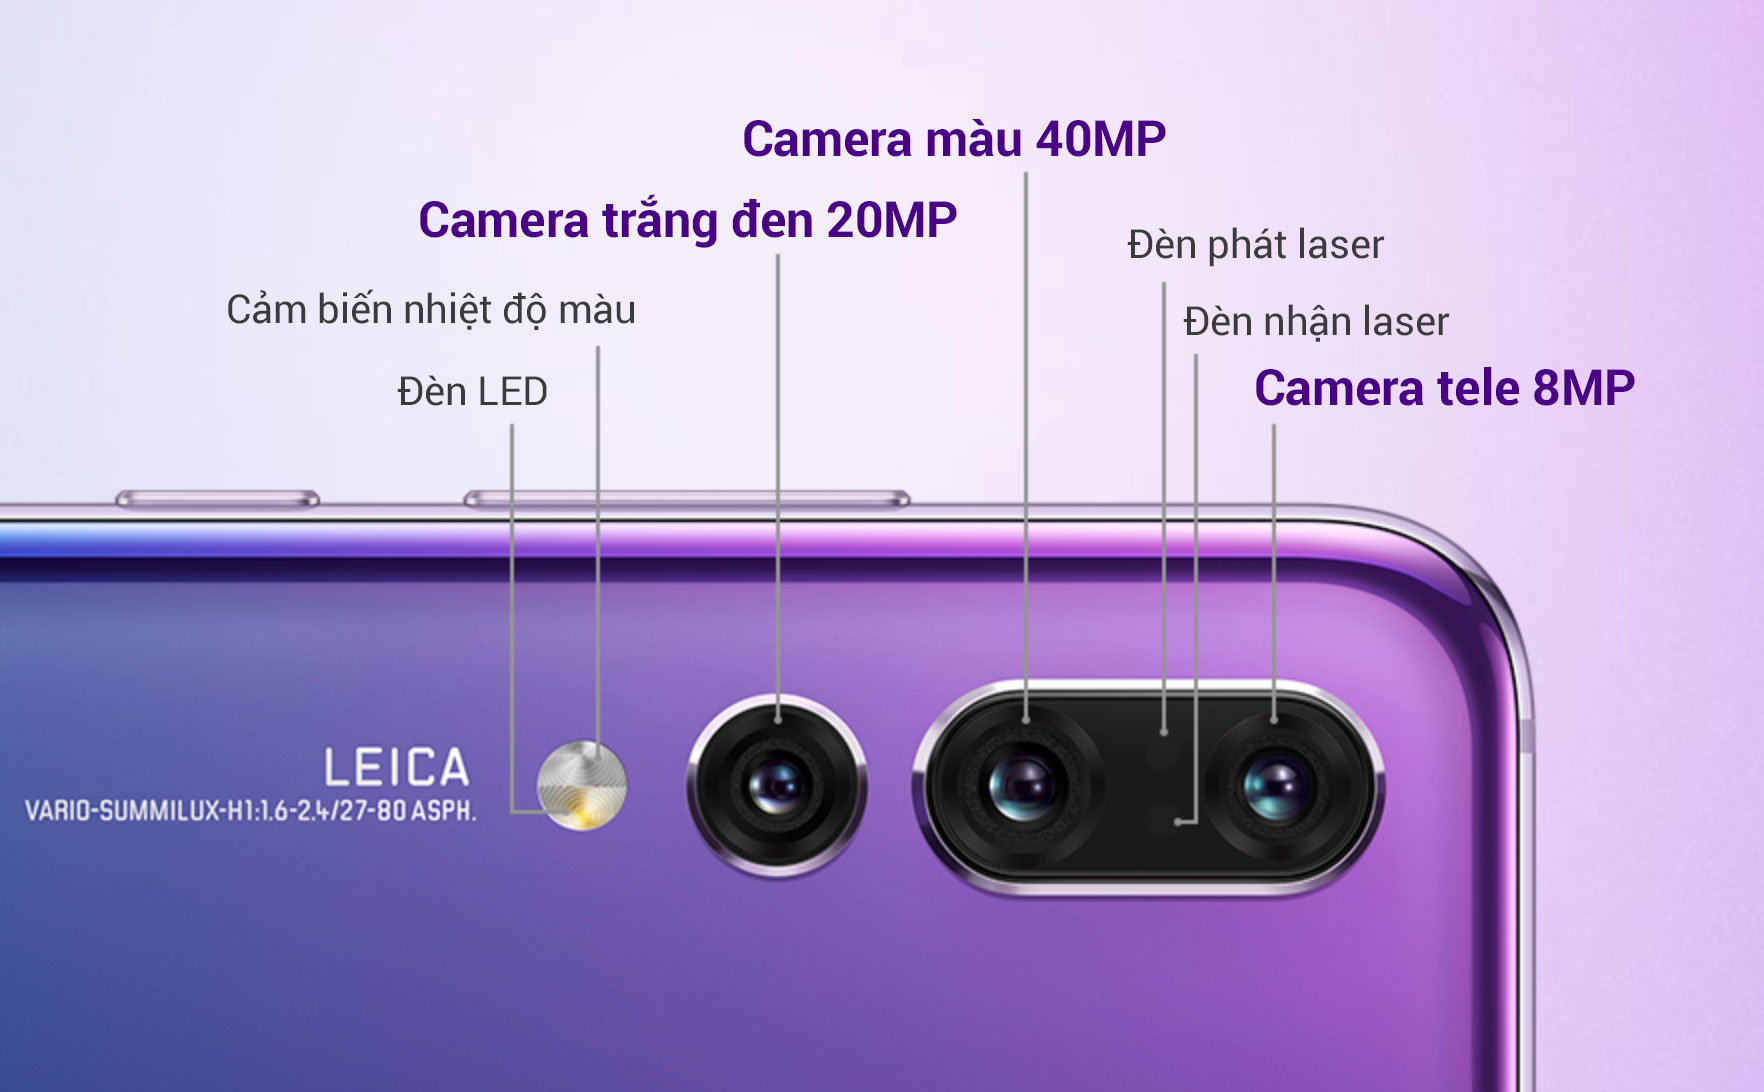 3 camera 40MP + 20MP trắng đen + 8MP tele của P20 Pro hoạt động ra sao?